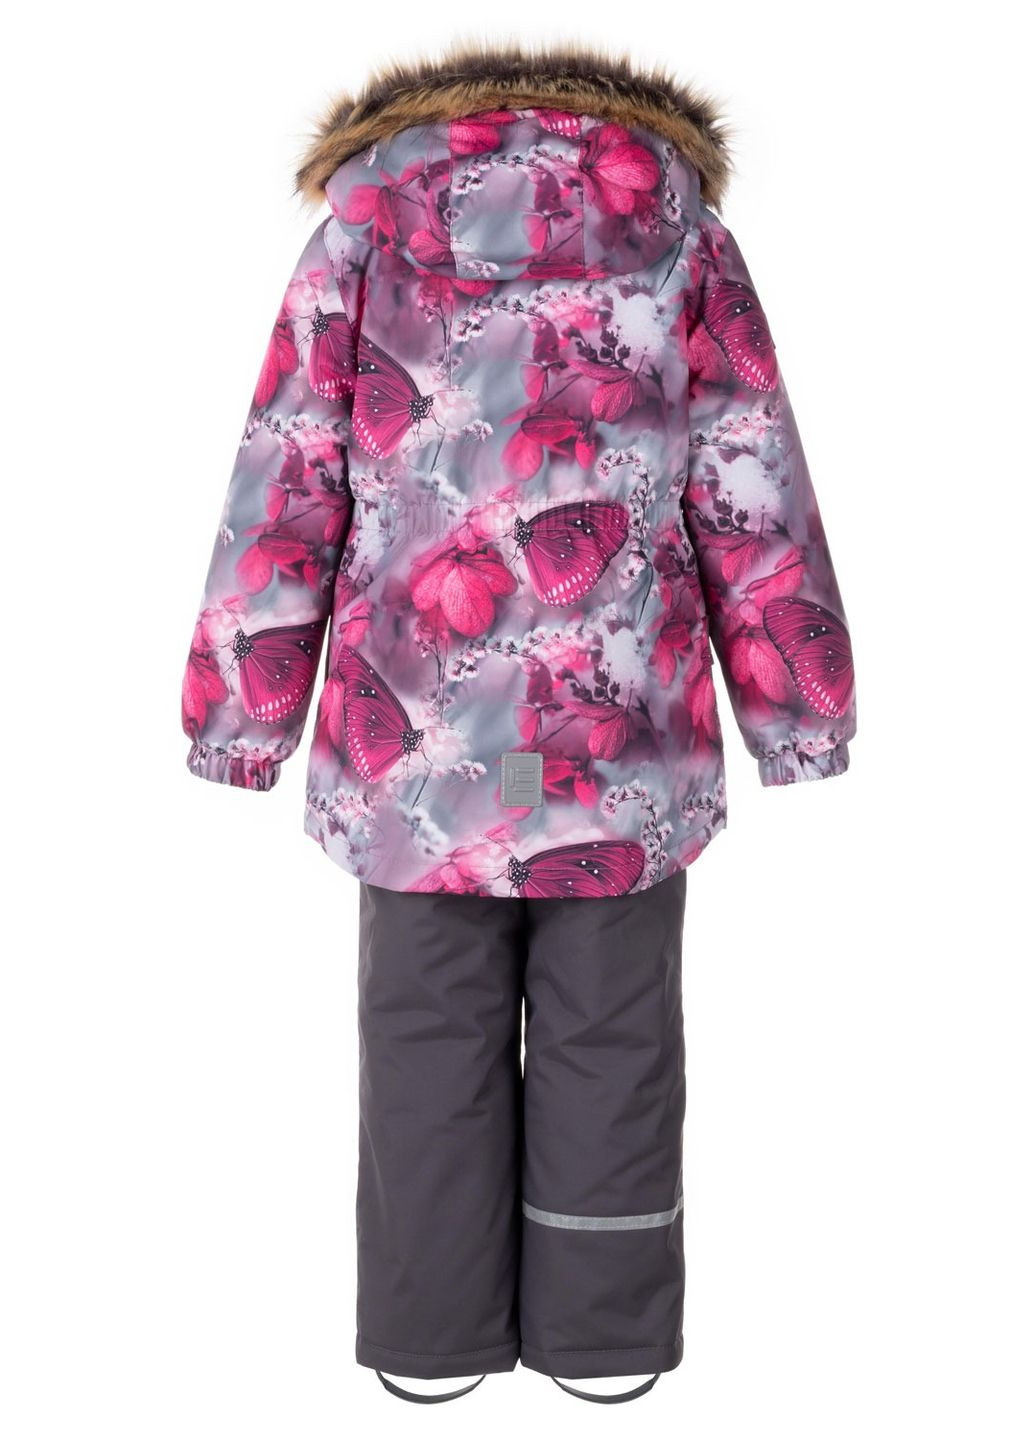 Фуксиновый зимний зимний комплект (куртка + полукомбинезон) для девочки 9188 134 см фуксия 68850 Lenne